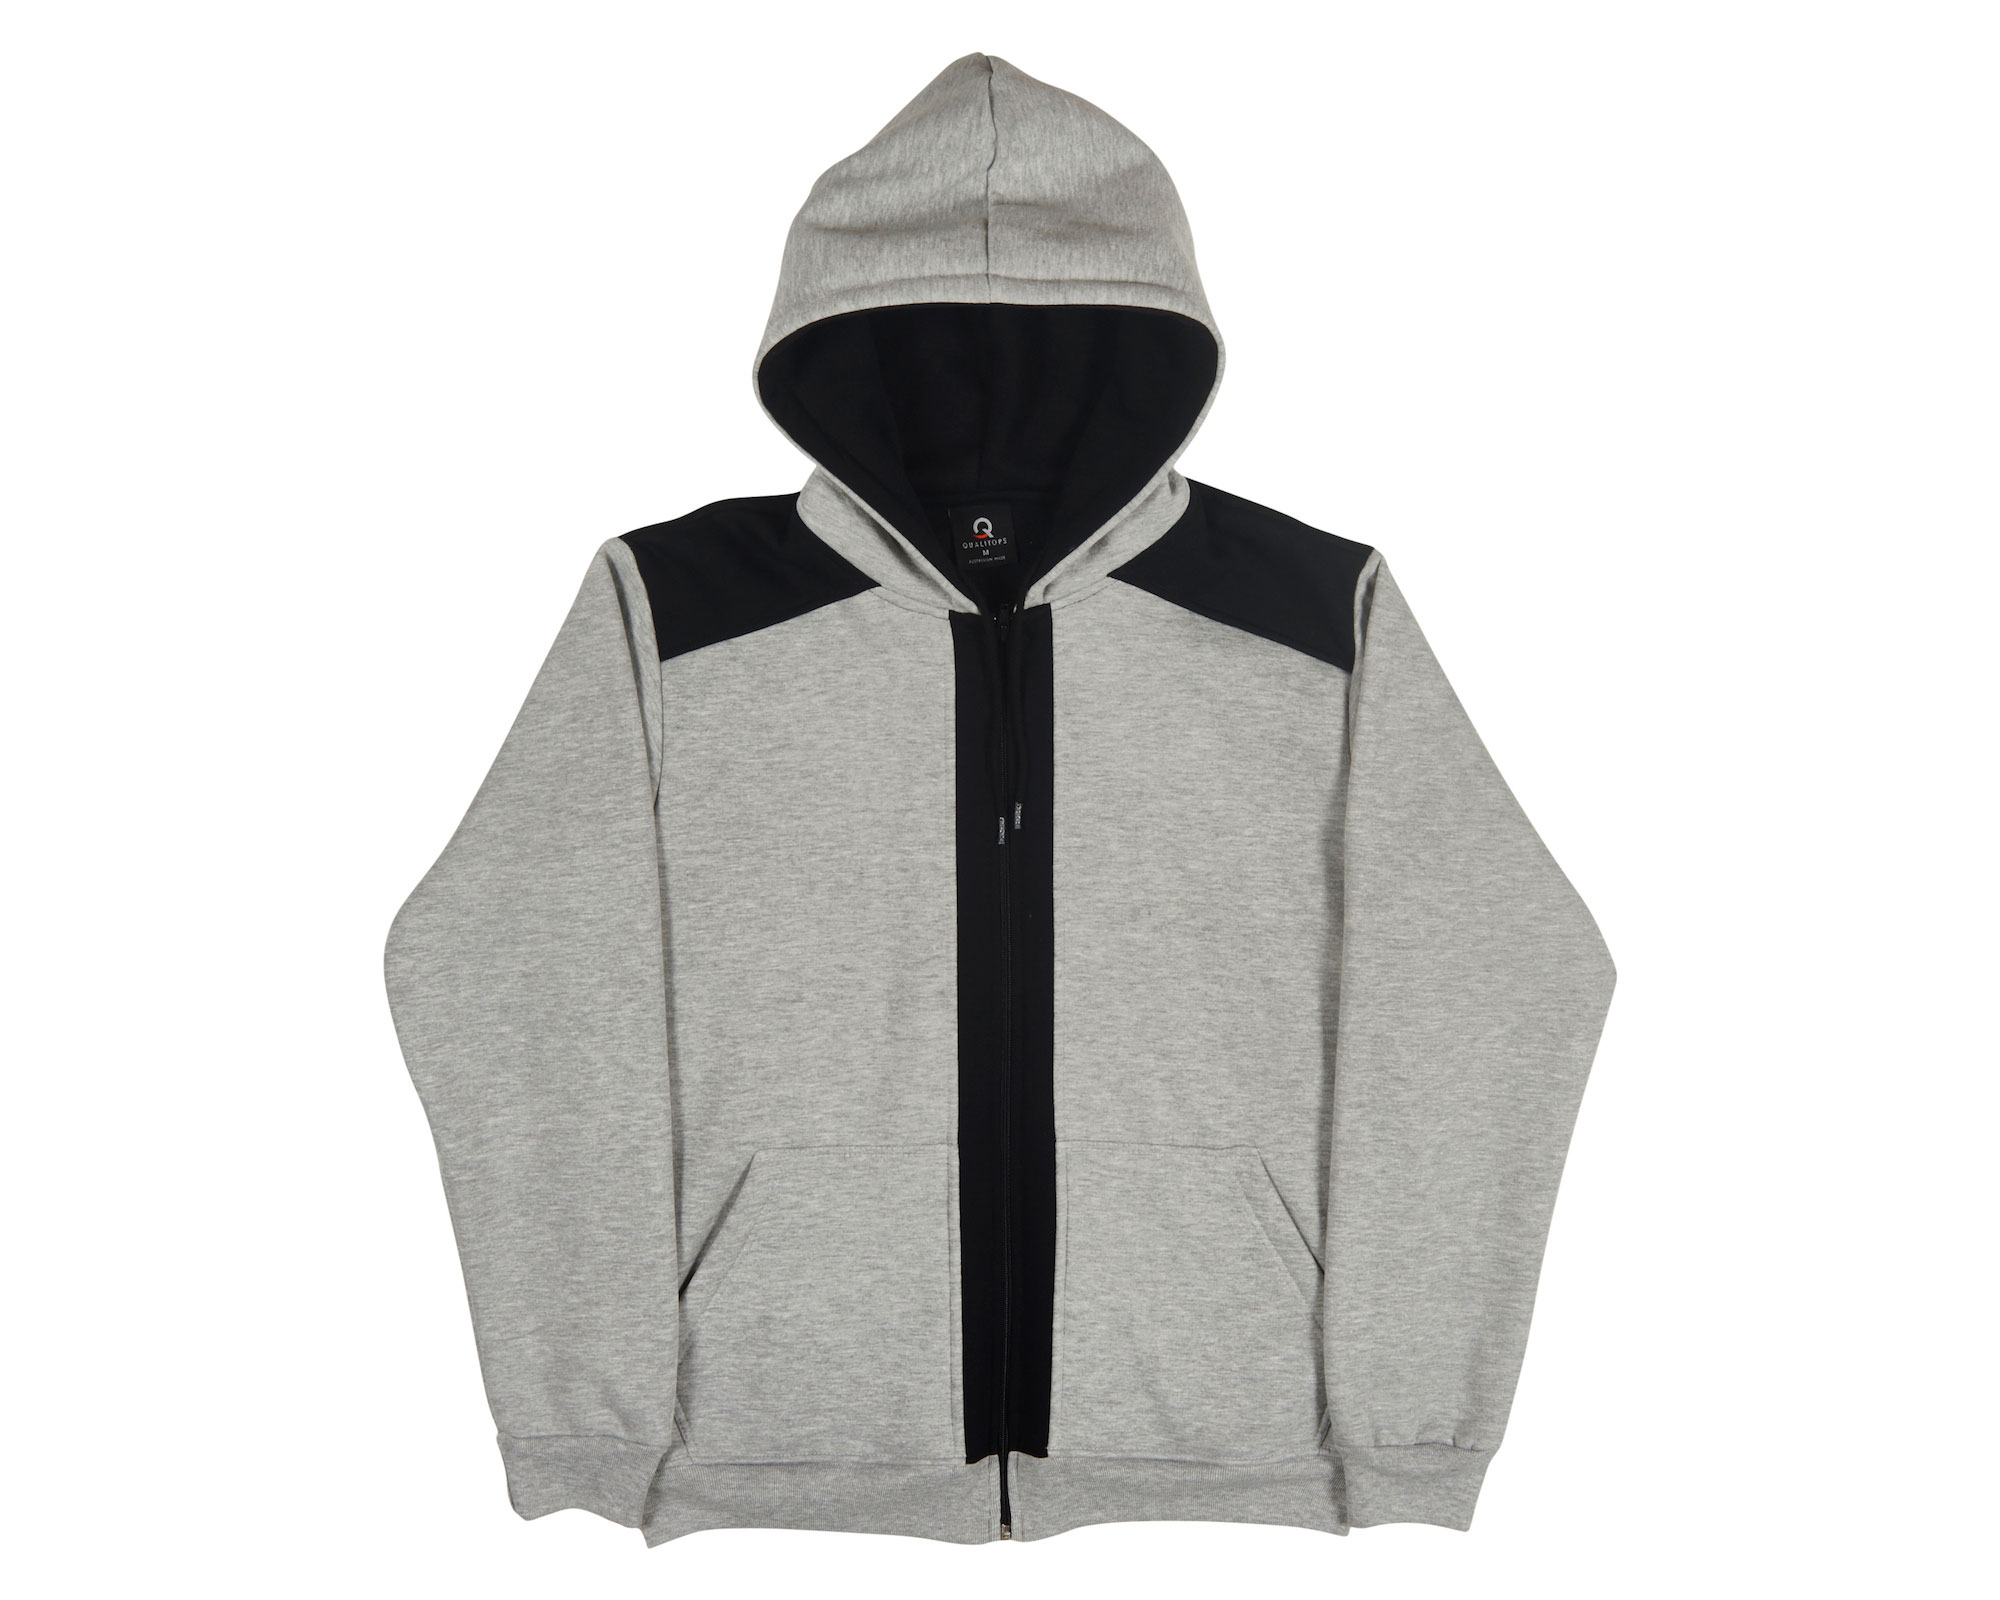 qualitops-mens-two-tone-zip-hoodie-235-fl-235-grey-marle-black